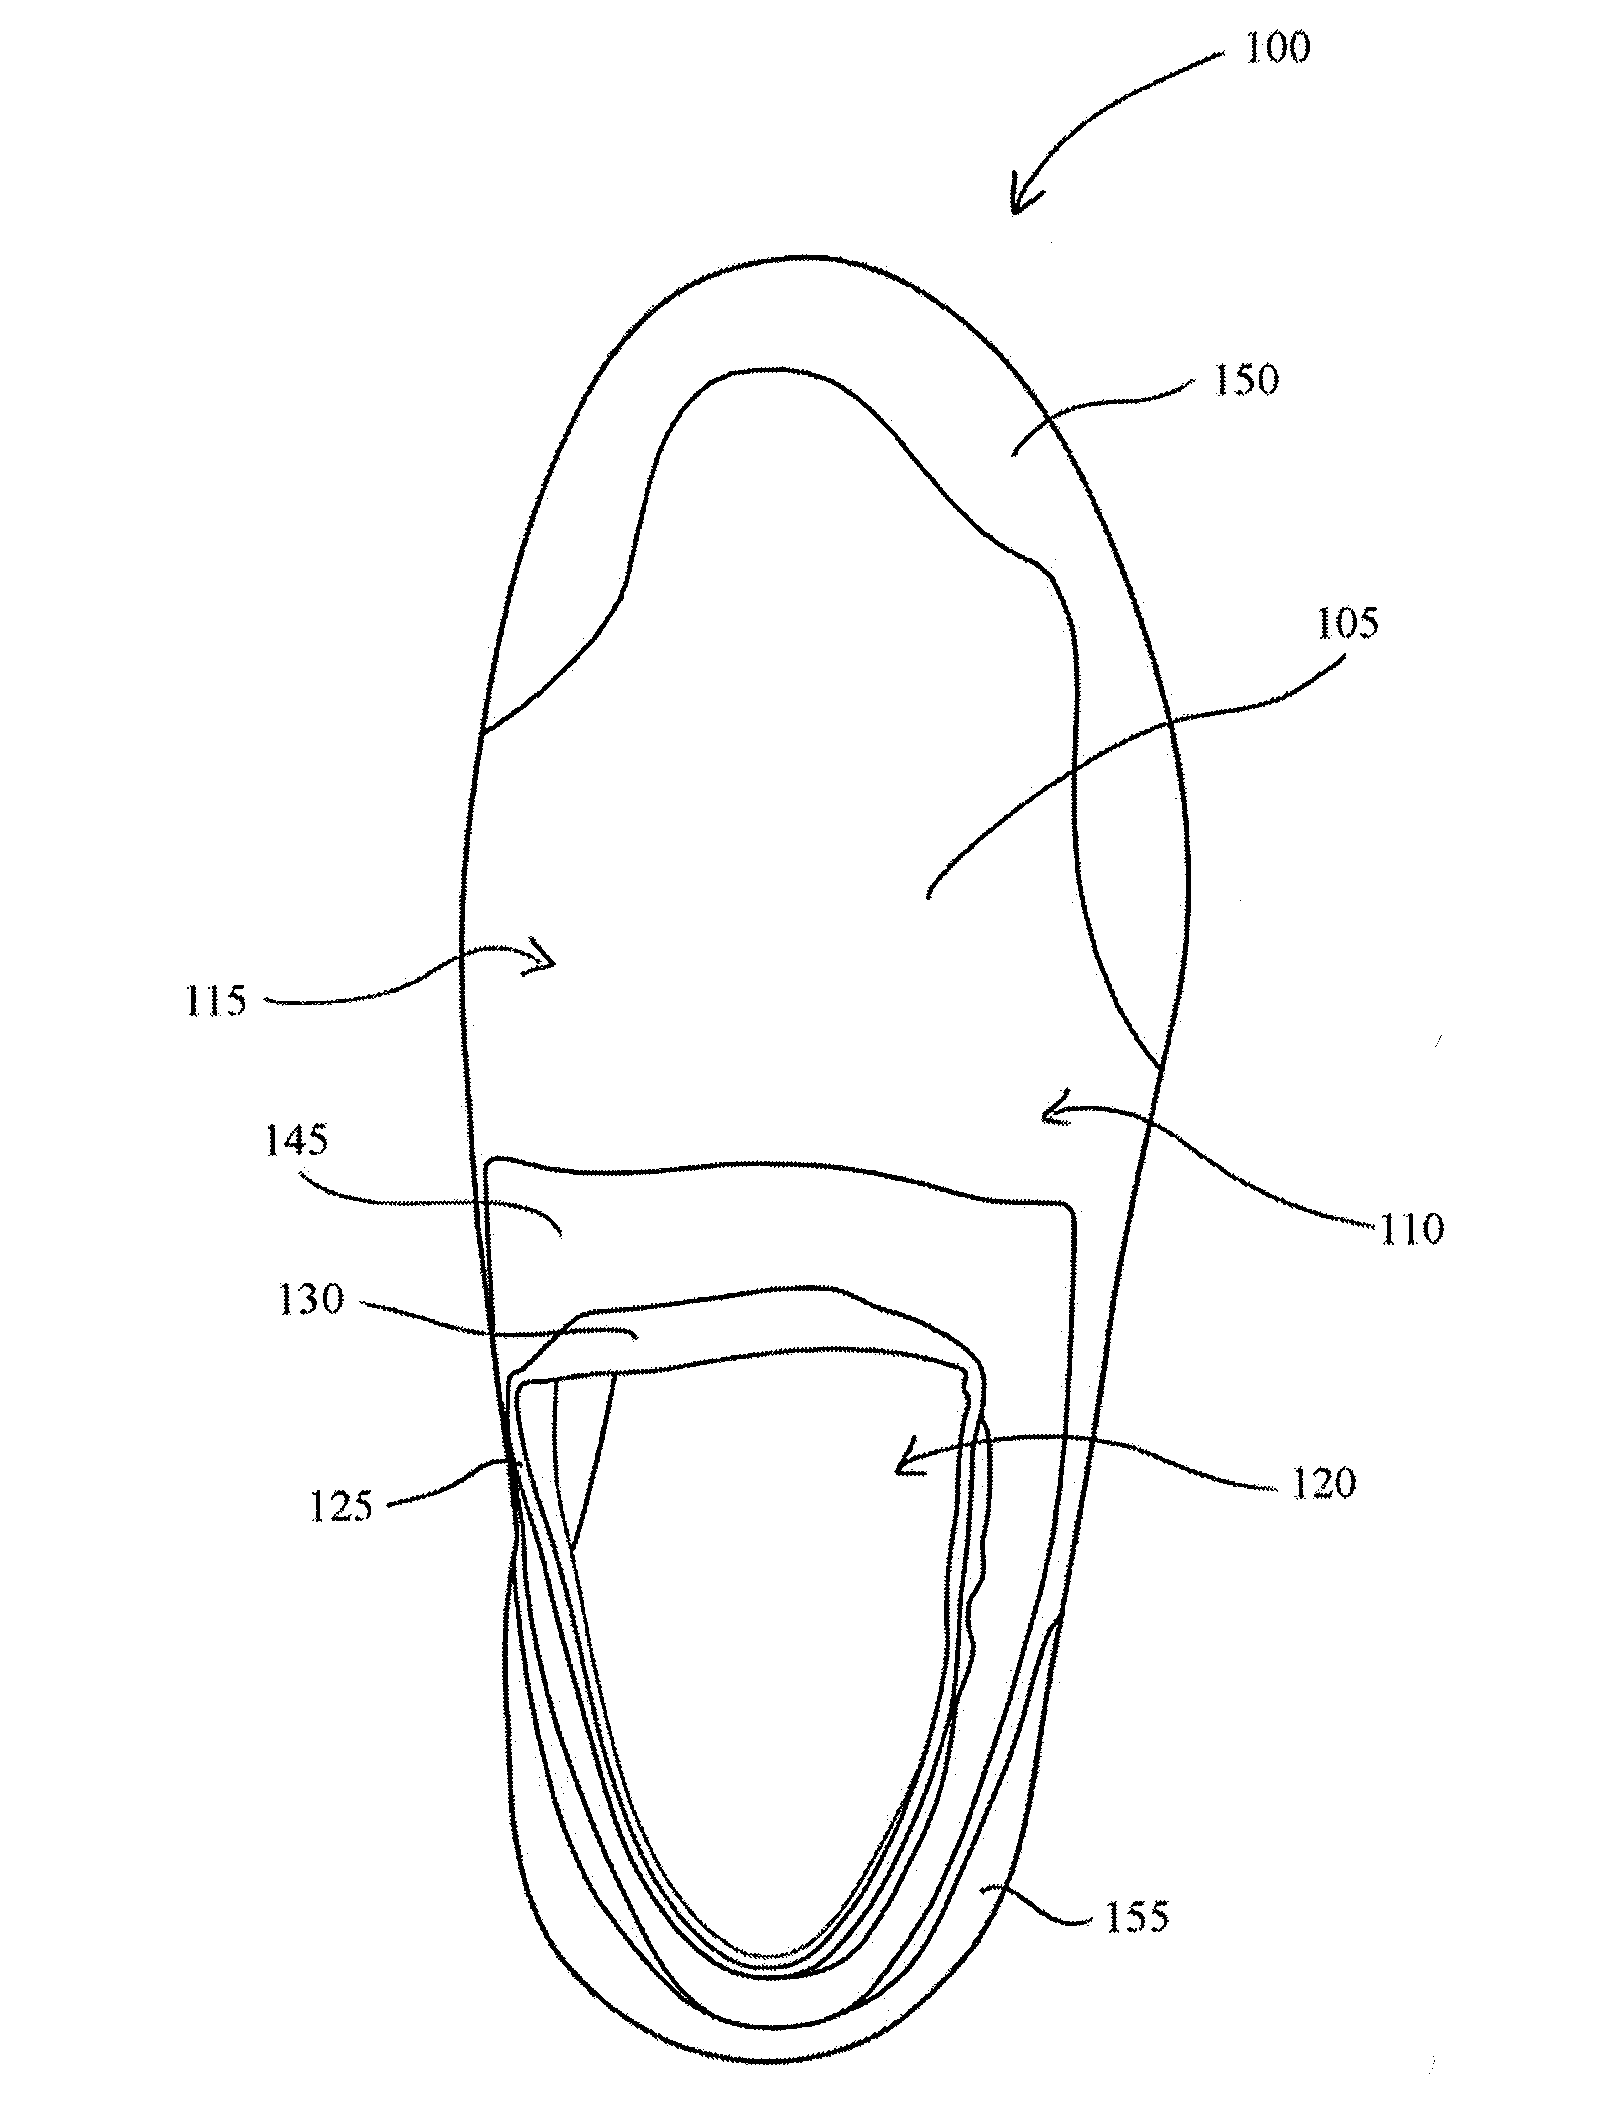 Article of footwear